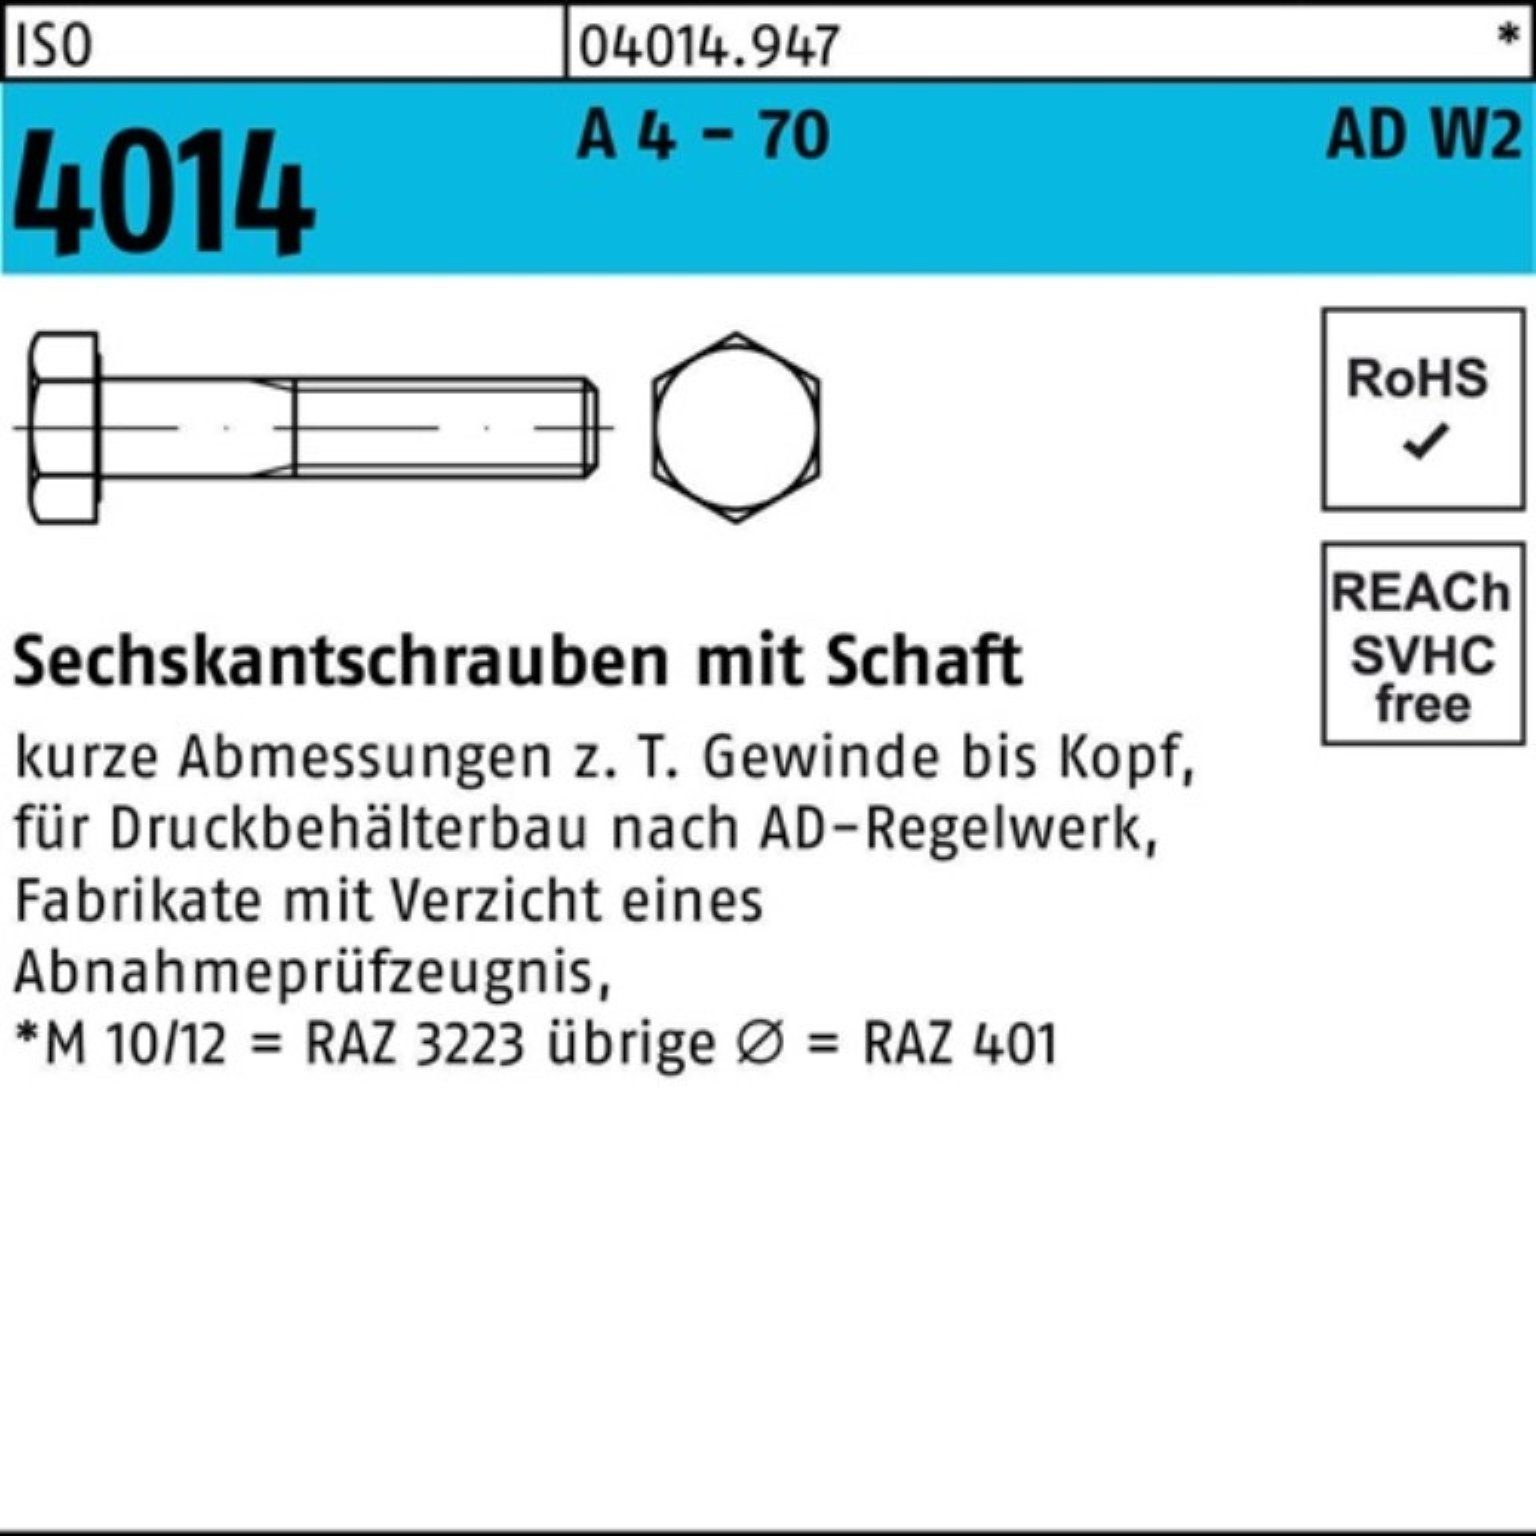 AD-W2 Sechskantschraube - Pack Bufab 130 4014 100er 70 ISO A Schaft 1 Sechskantschraube 4 M16x